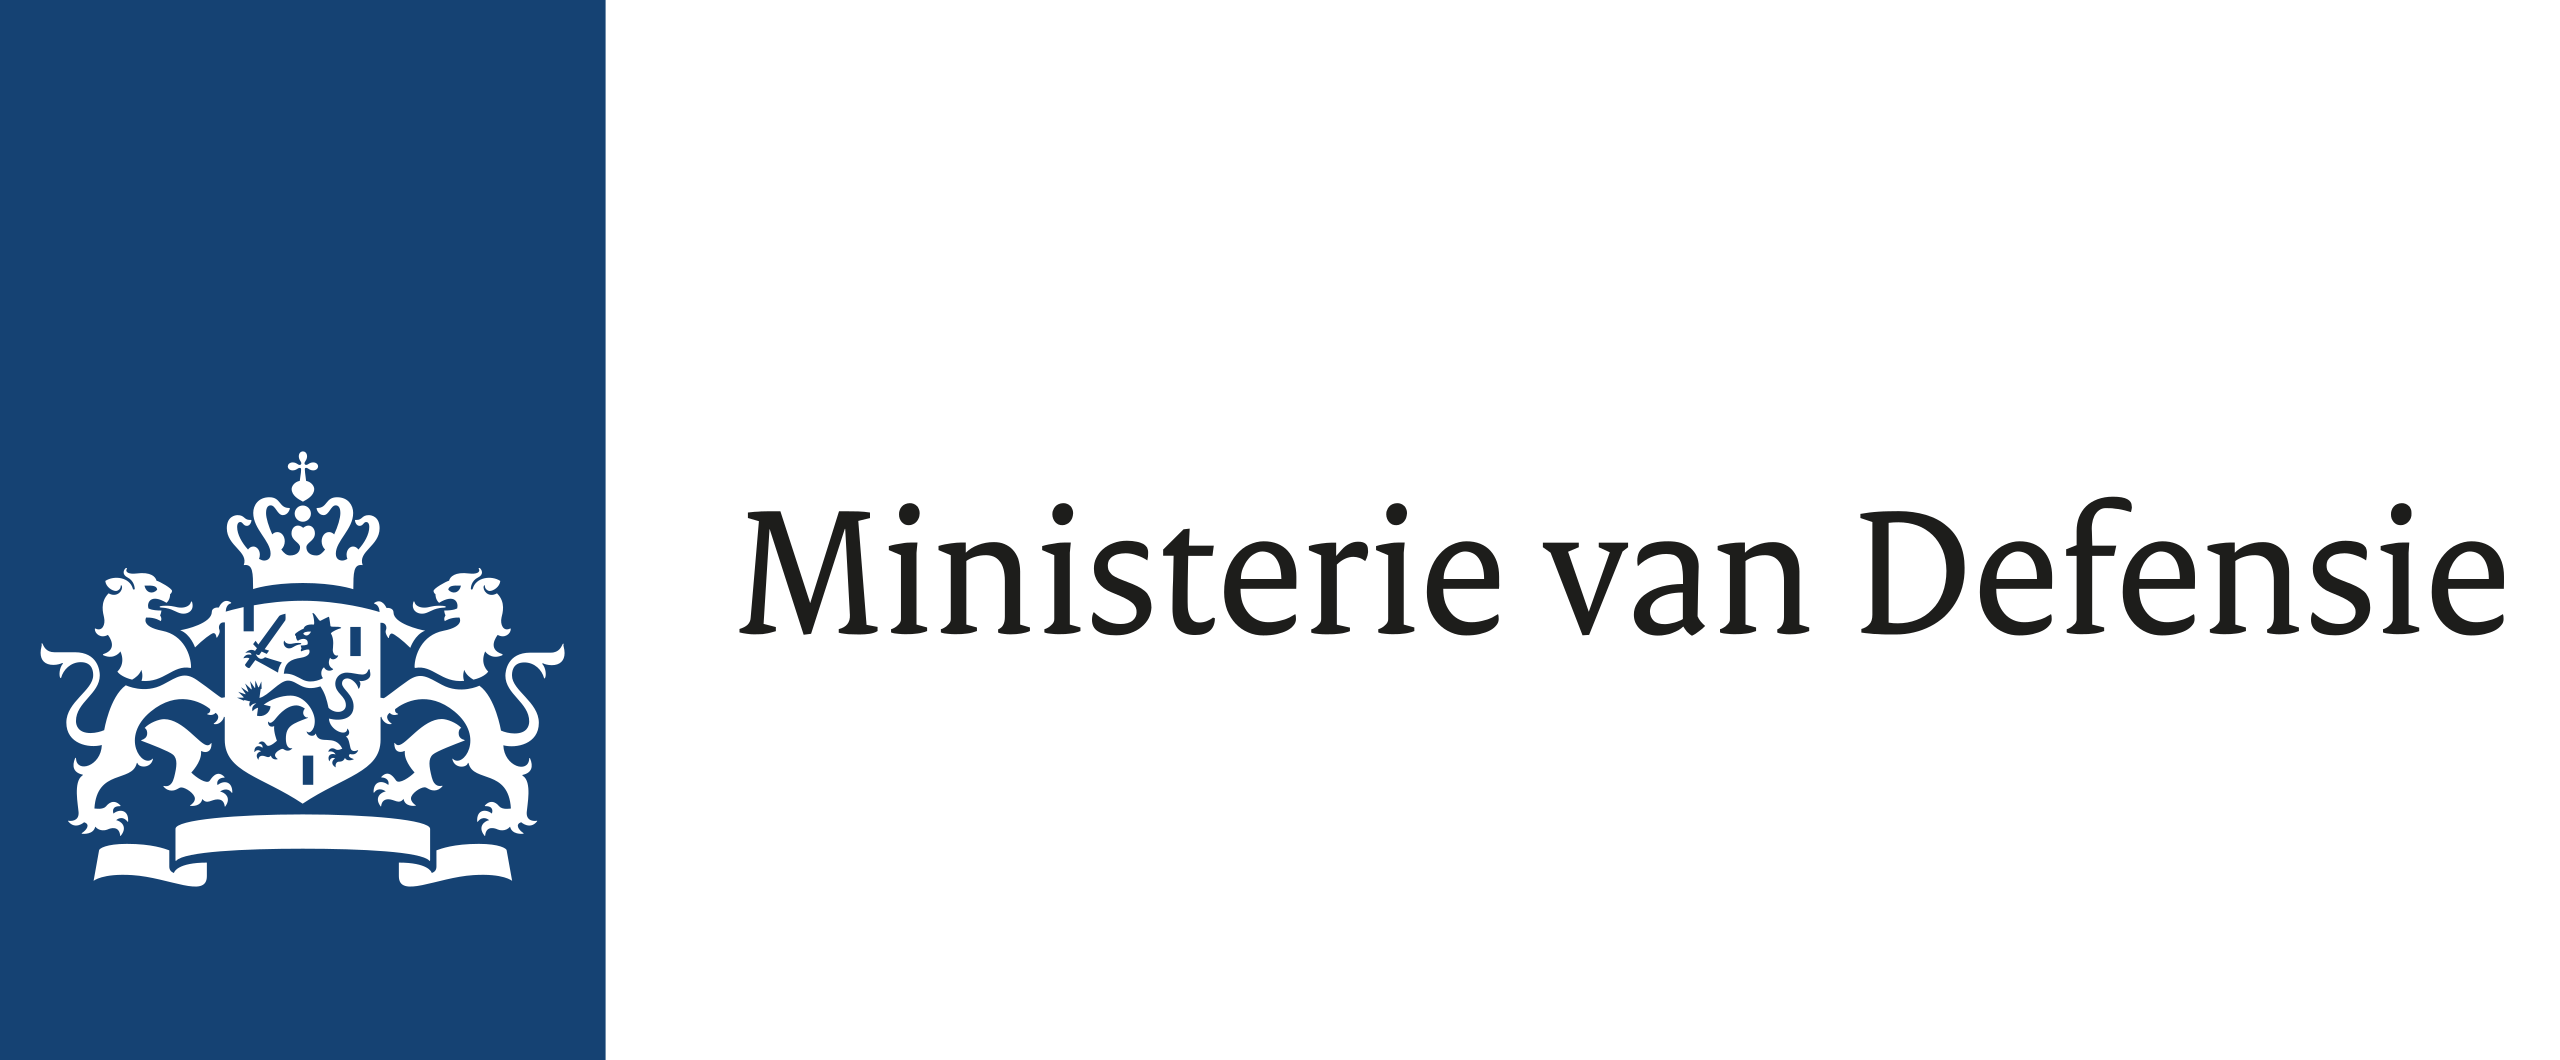 Ministerie van defensie logo